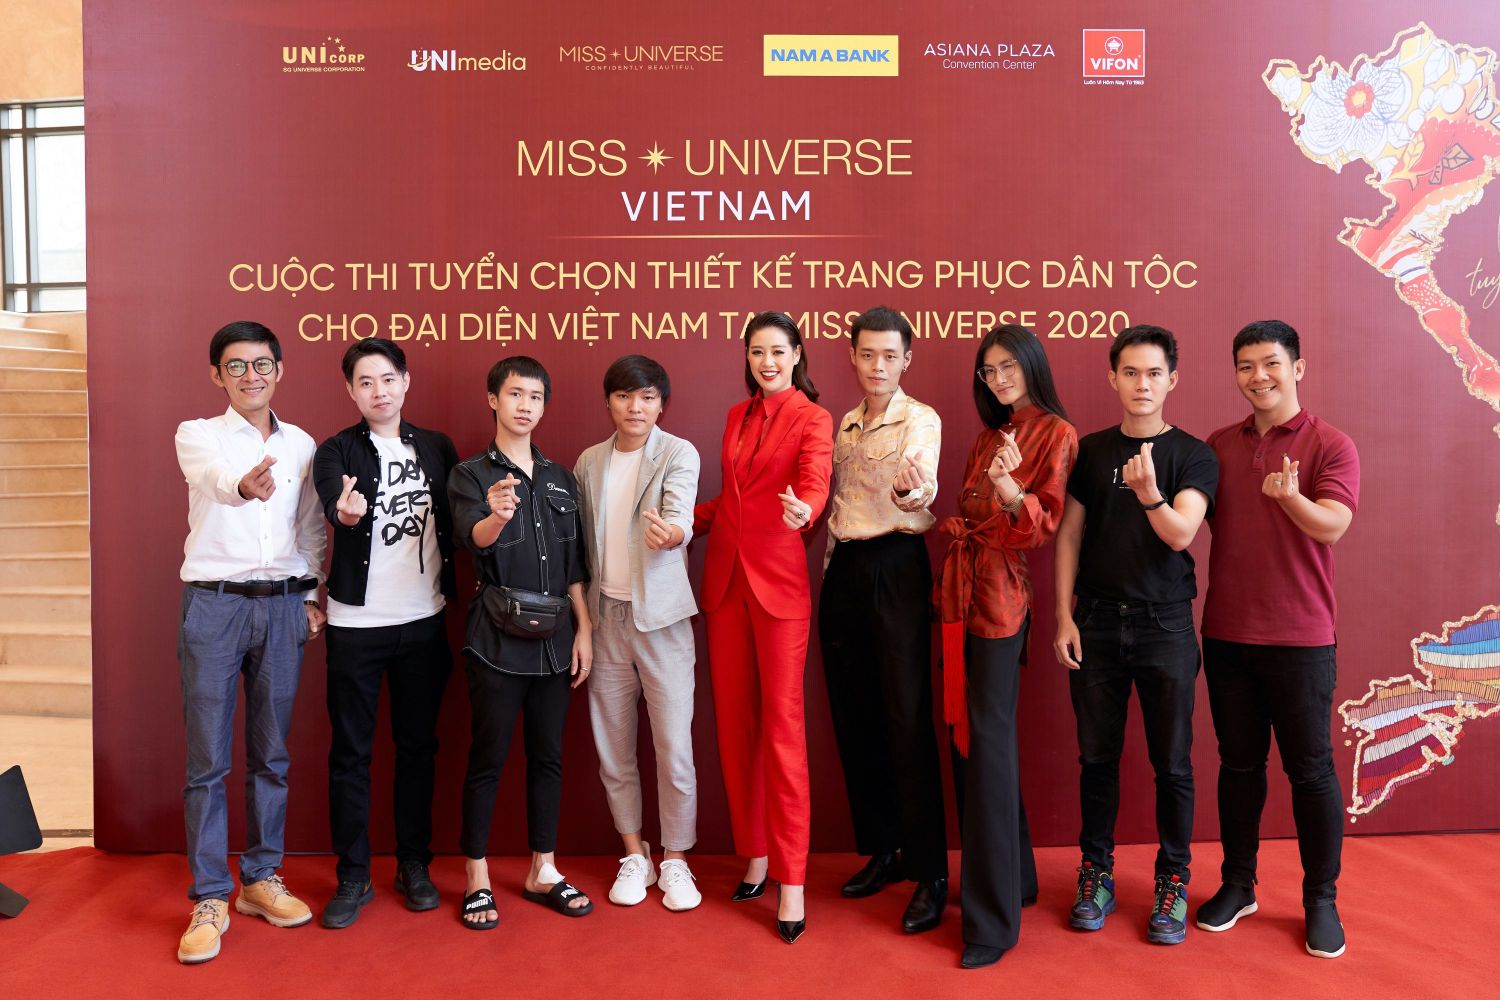 Hoa hau Khanh Van va Top 8 TPDT Tập 2 Road To Miss Universe: Cuộc đối đầu không khoan nhượng của các thiết kế trang phục dân tộc